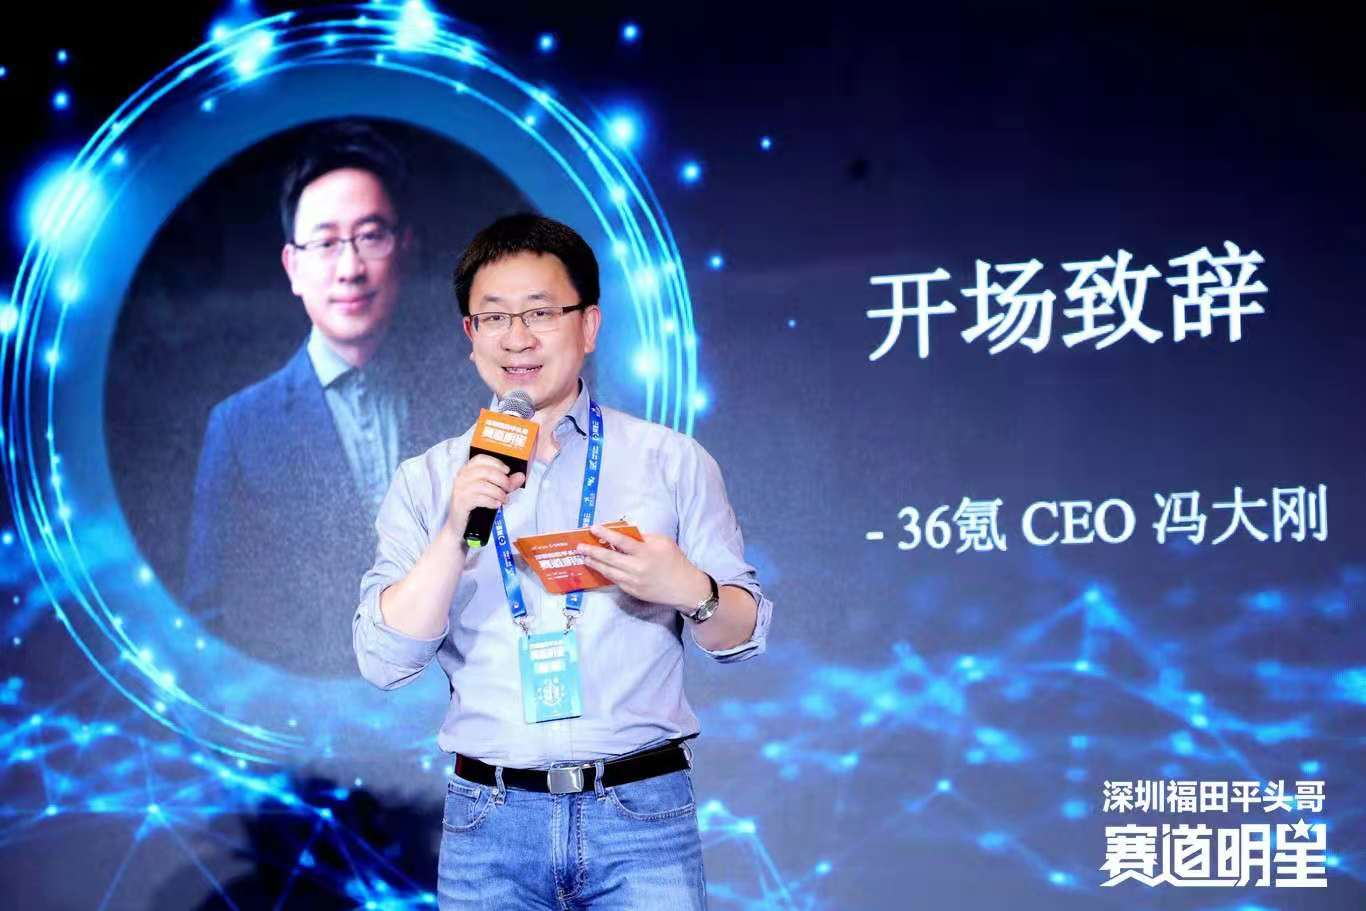 深圳福田赛道明星正式启航 ，为科技产业创新发展注入新动能